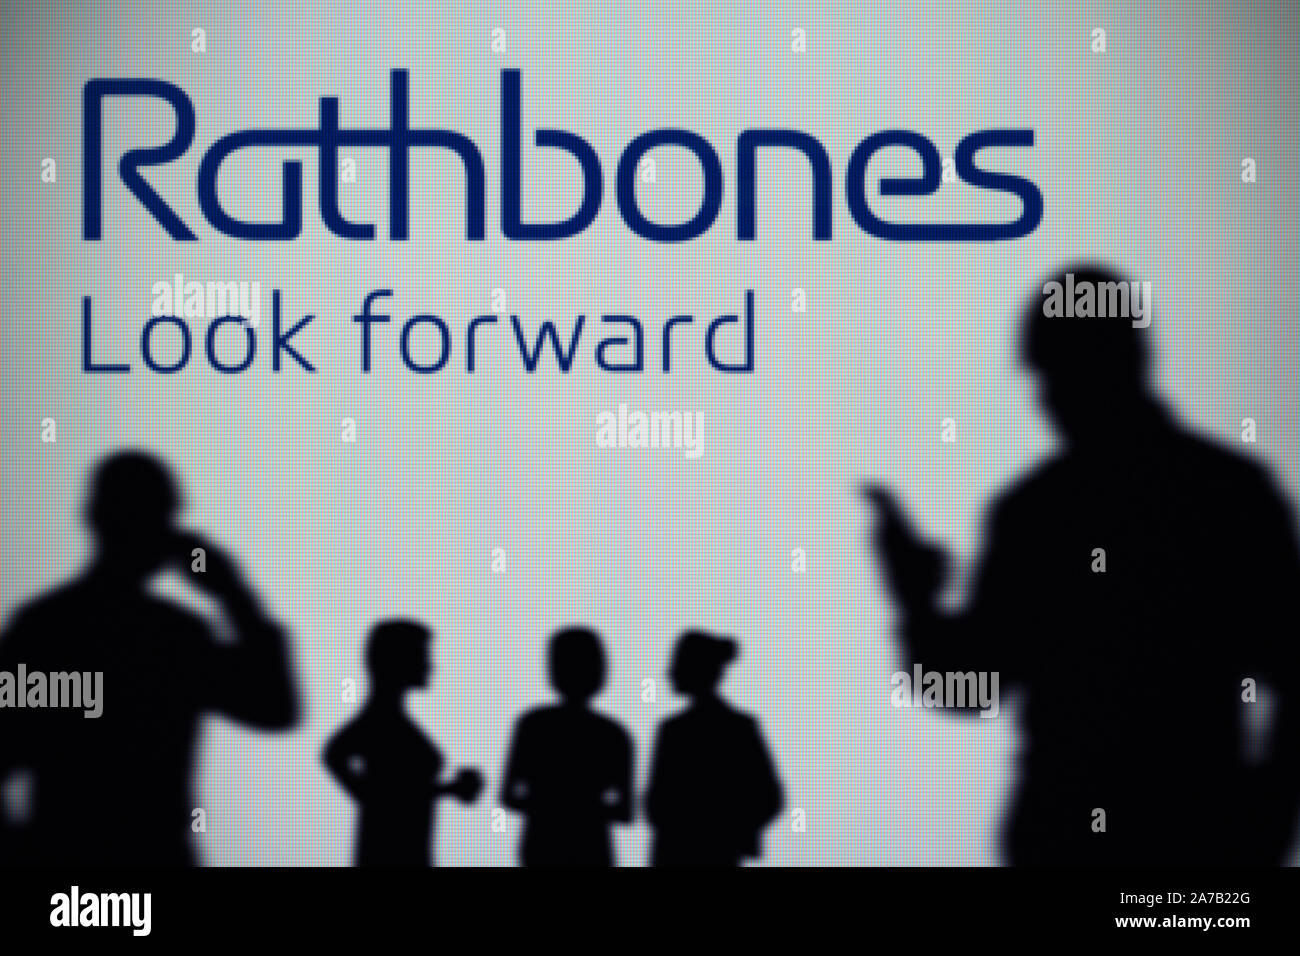 Le Rathbone Brothers logo est visible sur un écran LED à l'arrière-plan tandis qu'une silhouette personne utilise un smartphone (usage éditorial uniquement) Banque D'Images